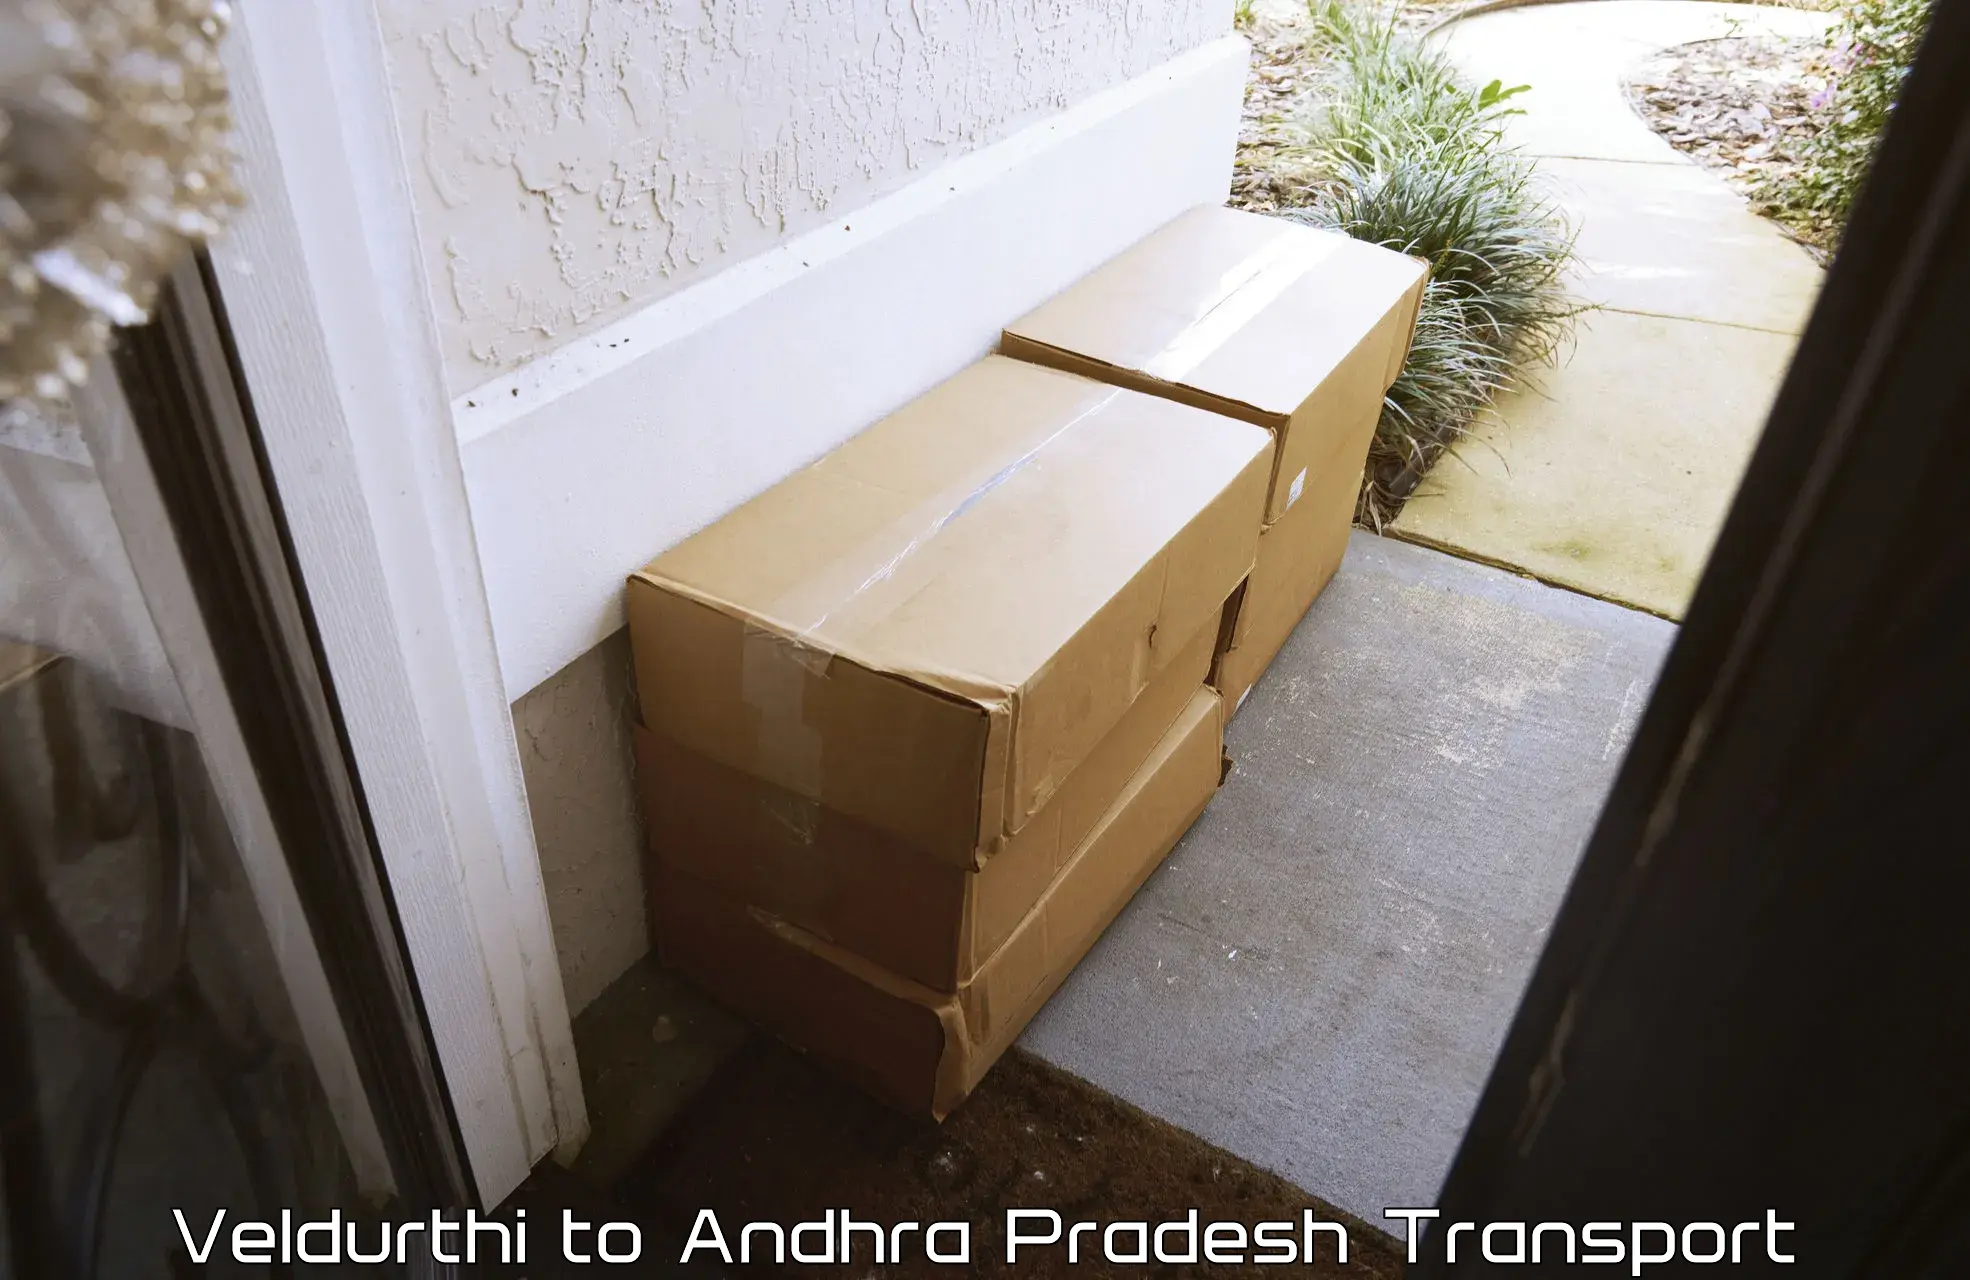 Bike shipping service Veldurthi to Andhra Pradesh